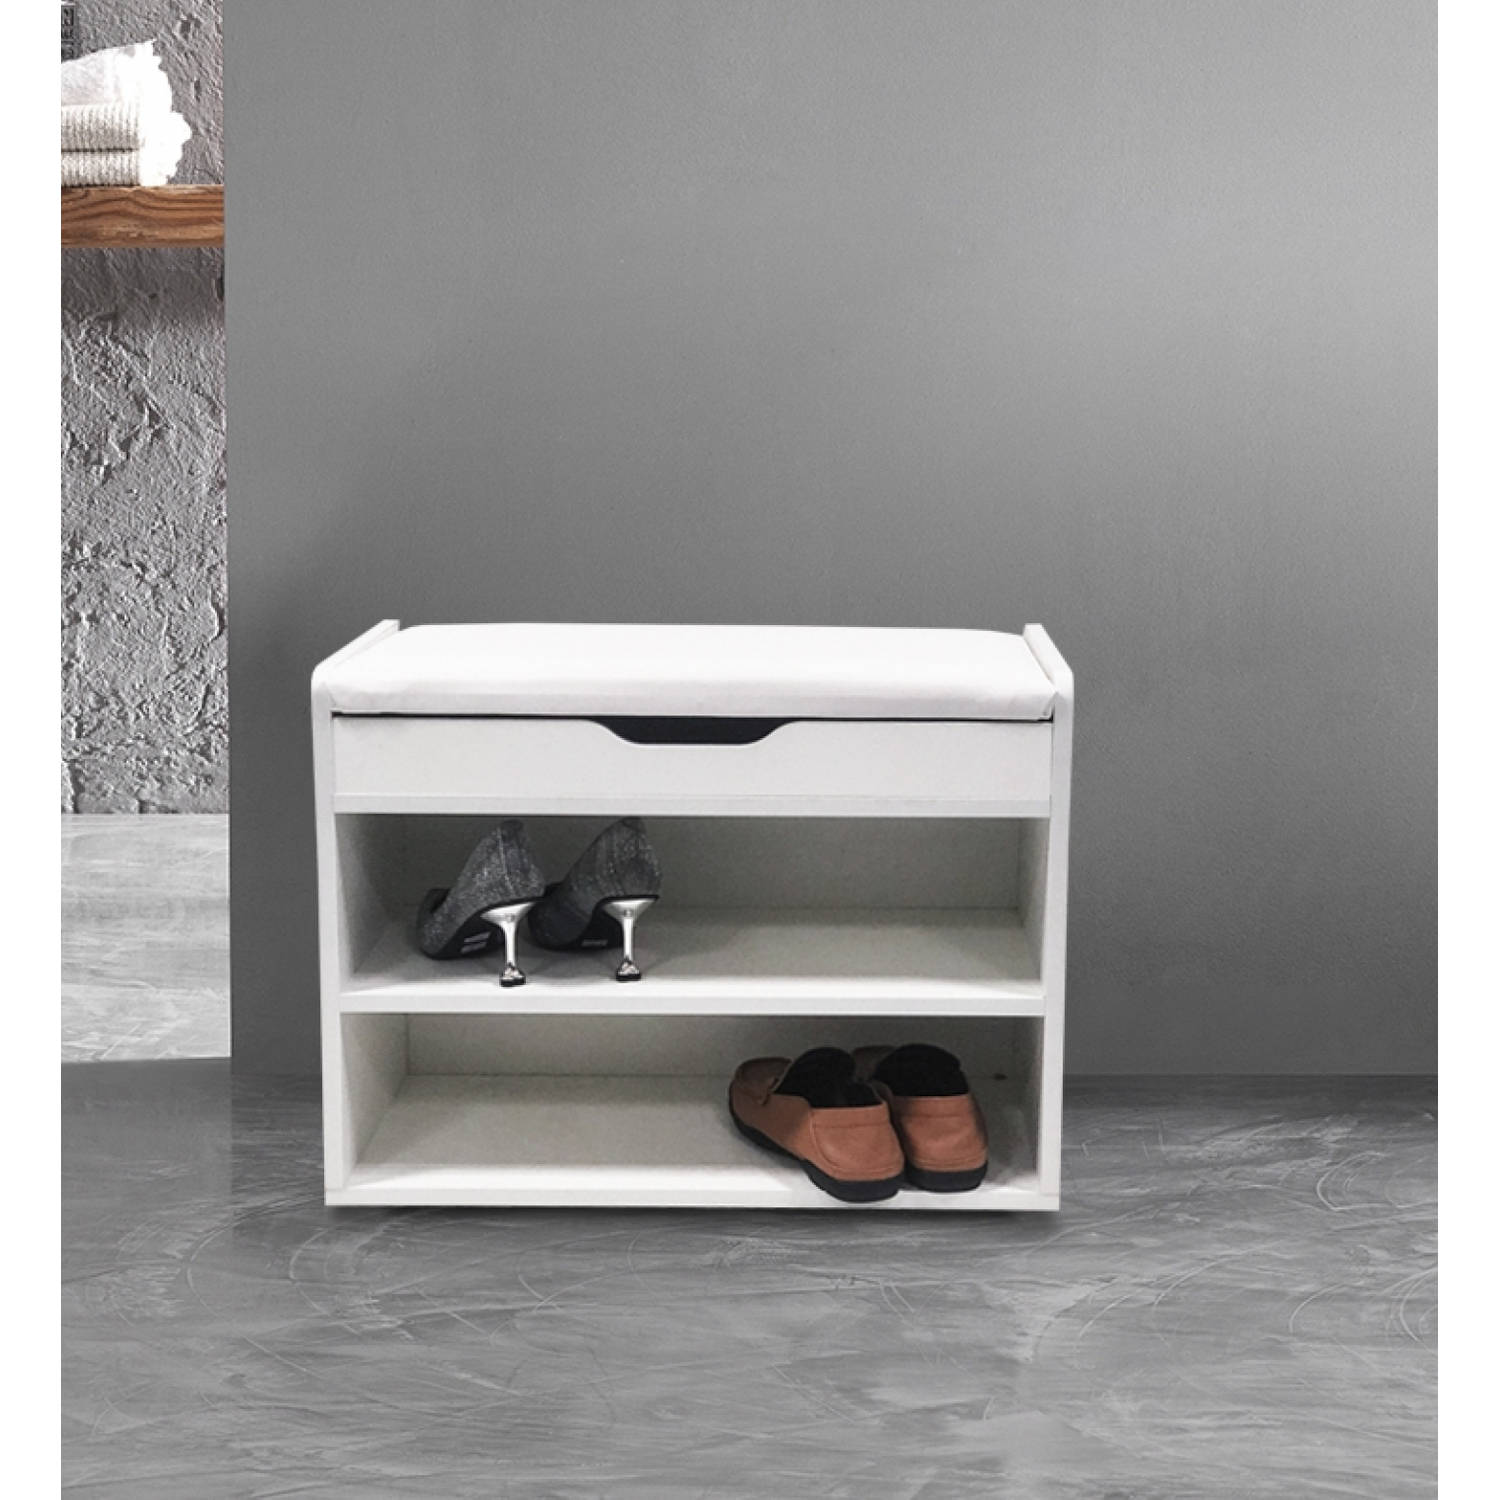 bankje - schoenenrek - schoenenbankje met opklapbaar zitkussen - 60 cm breed | Blokker